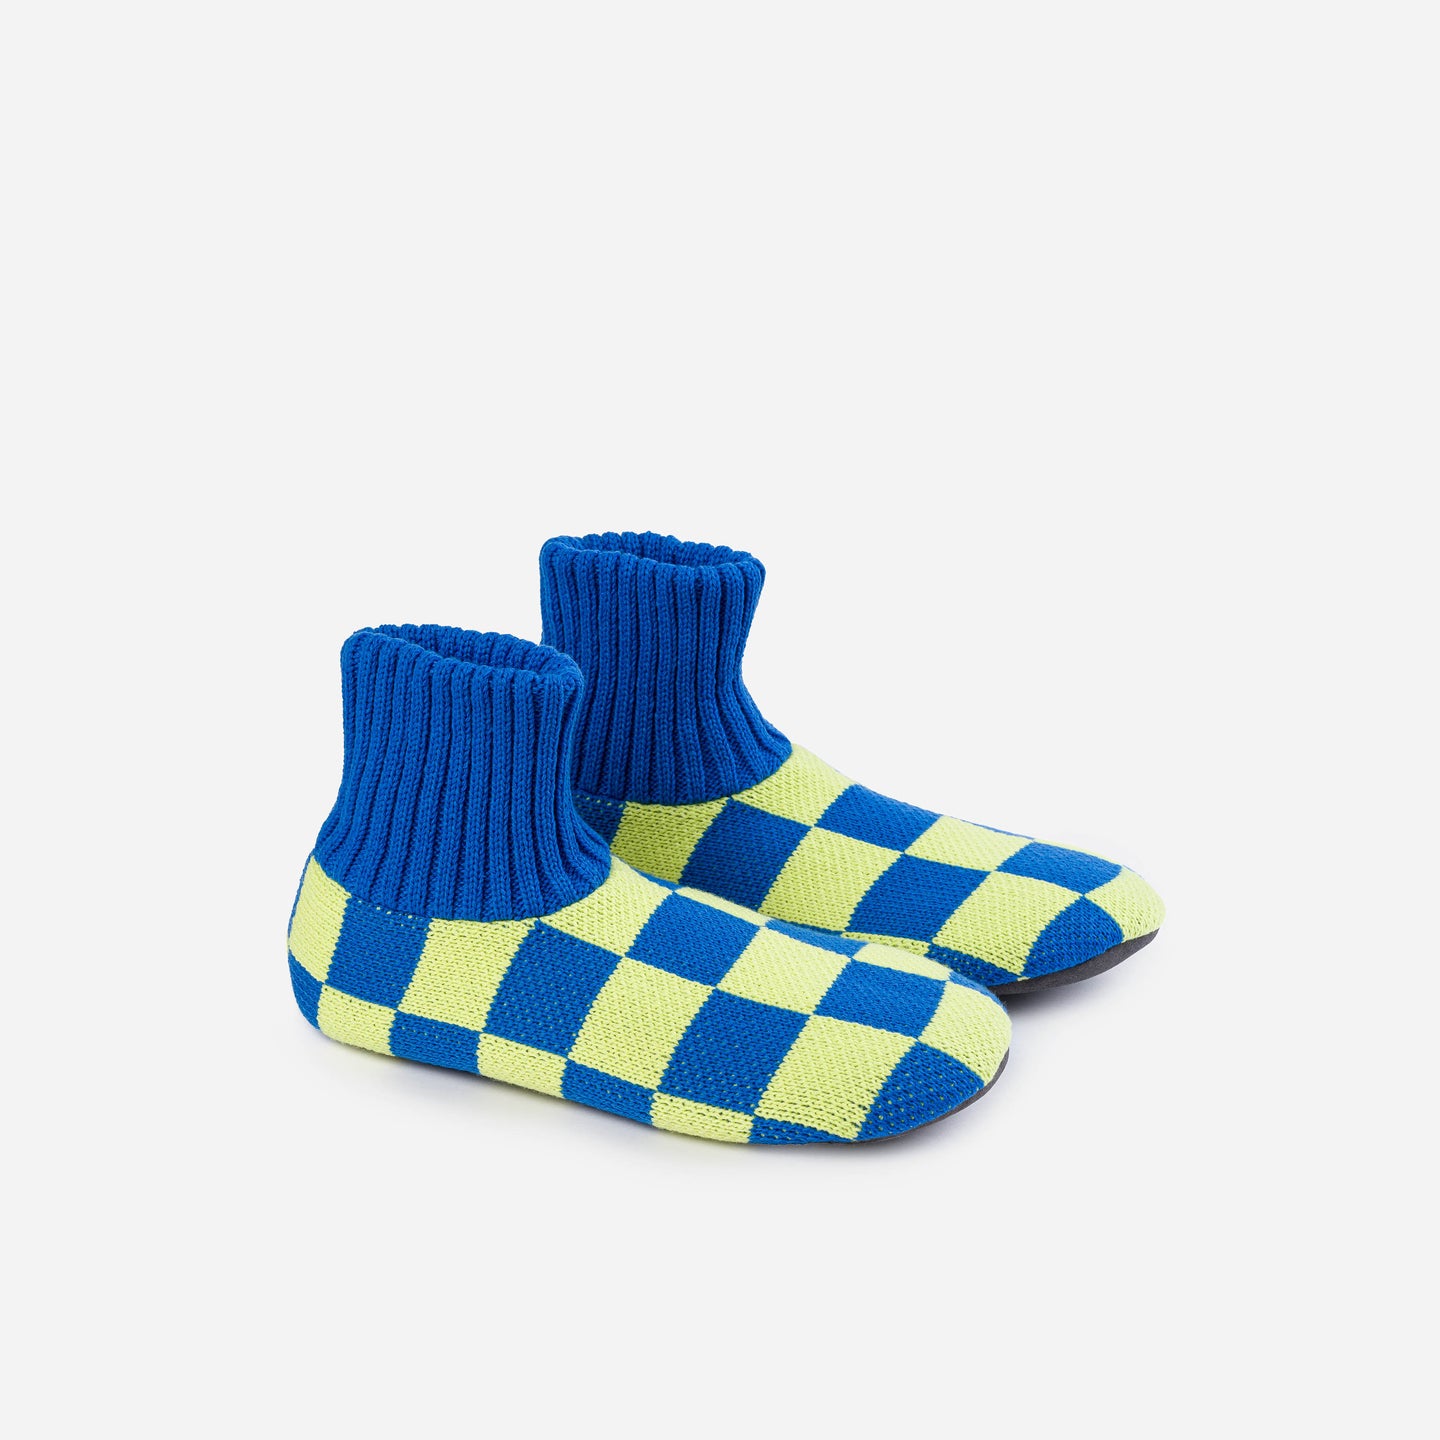 Checkerboard Knit Sock Slippers Knitted Socks Rib Cuff